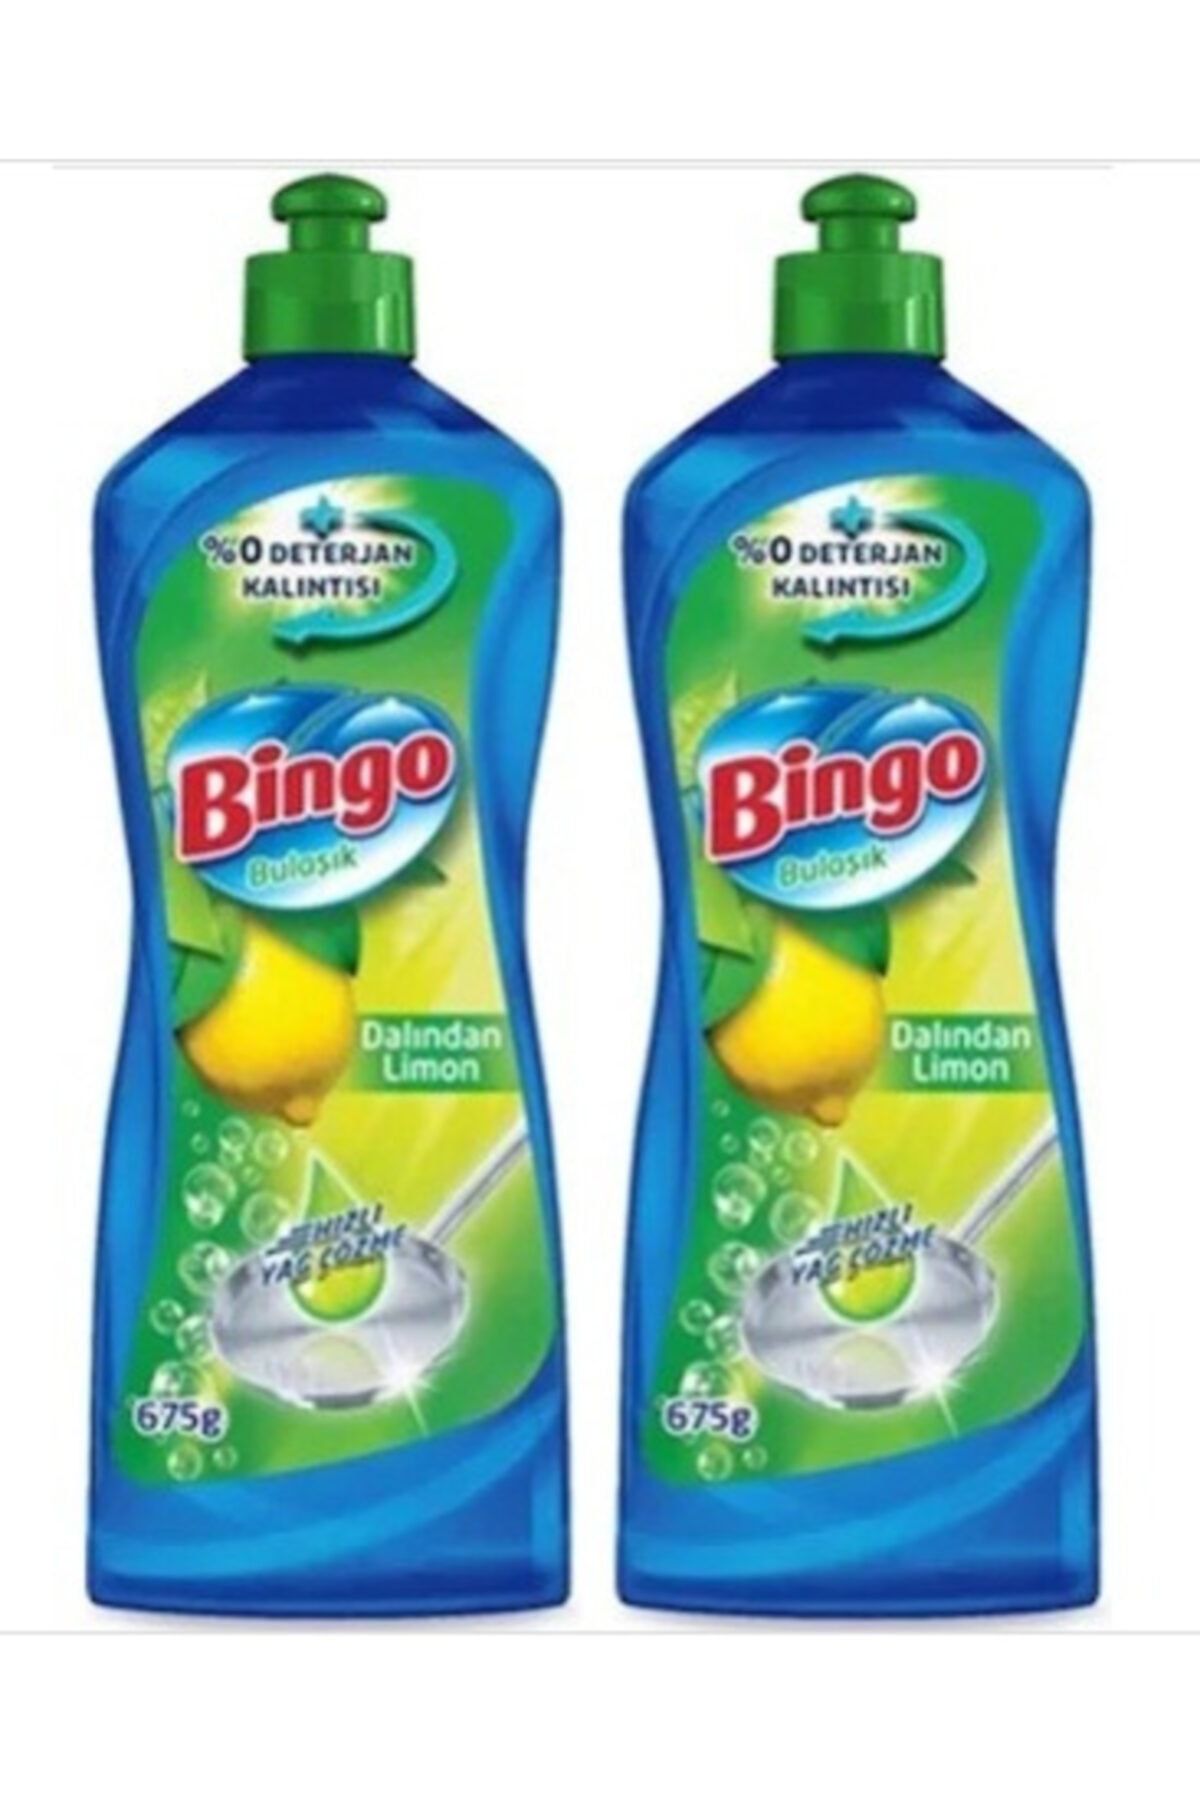 Bingo Dynamic Dalından Limon 675 ml  2 Adet